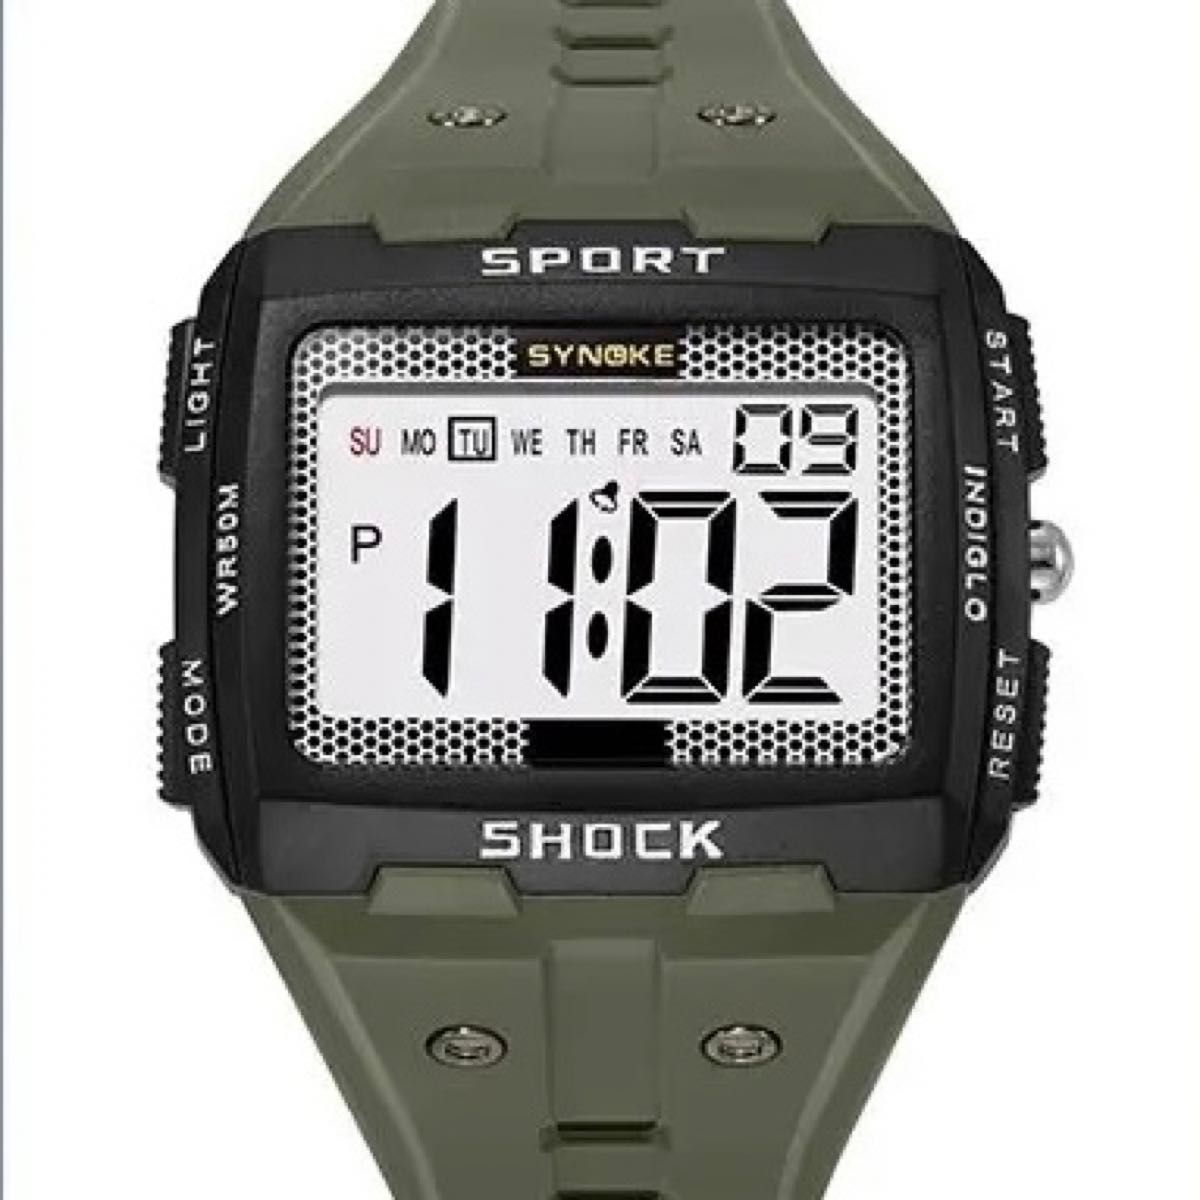 新品 SYNOKE ビッグフェイスデジタル 防水 デジタルストップウォッチ メンズ腕時計 スクエア ブラック9818